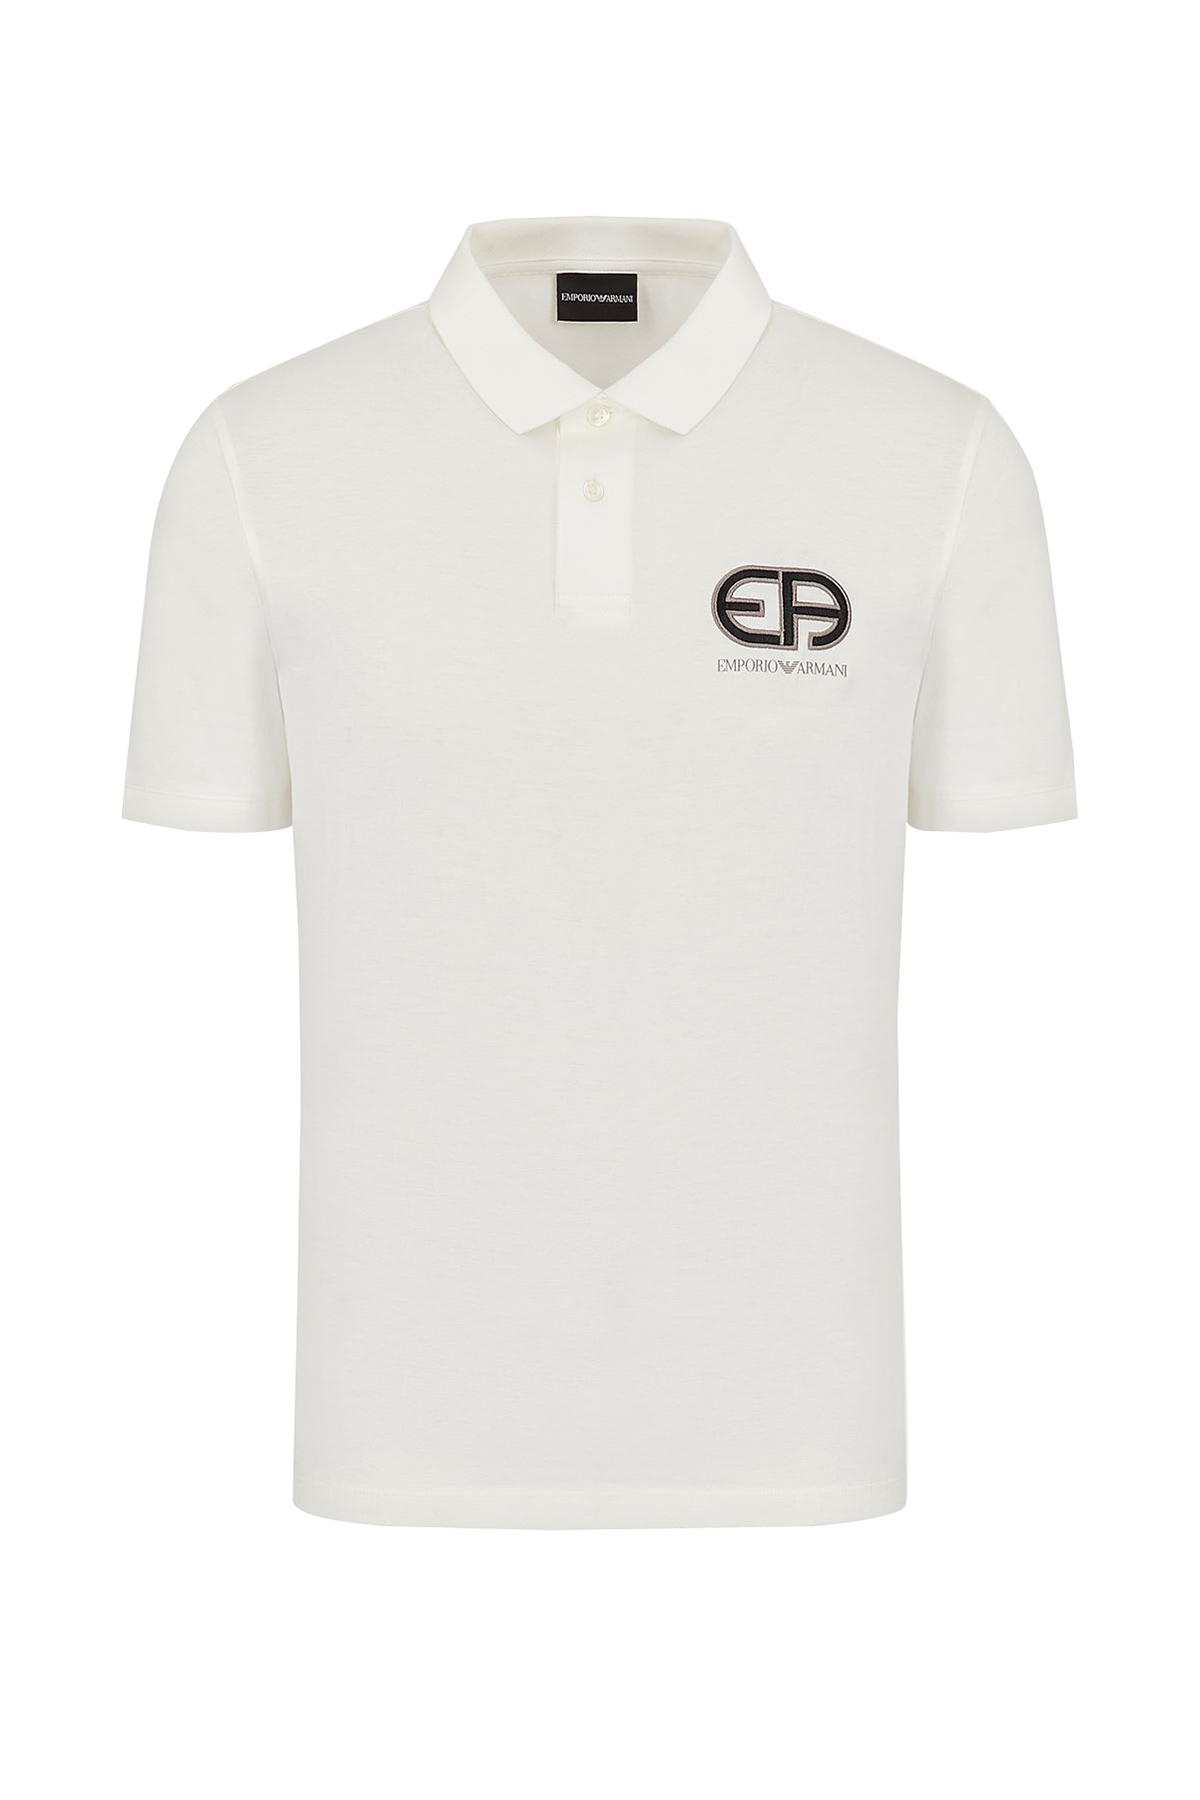 Emporio Armani Marka Logolu Düğmeli T Shirt Erkek Polo 3K1FB7 1JUVZ 0101 BEYAZ